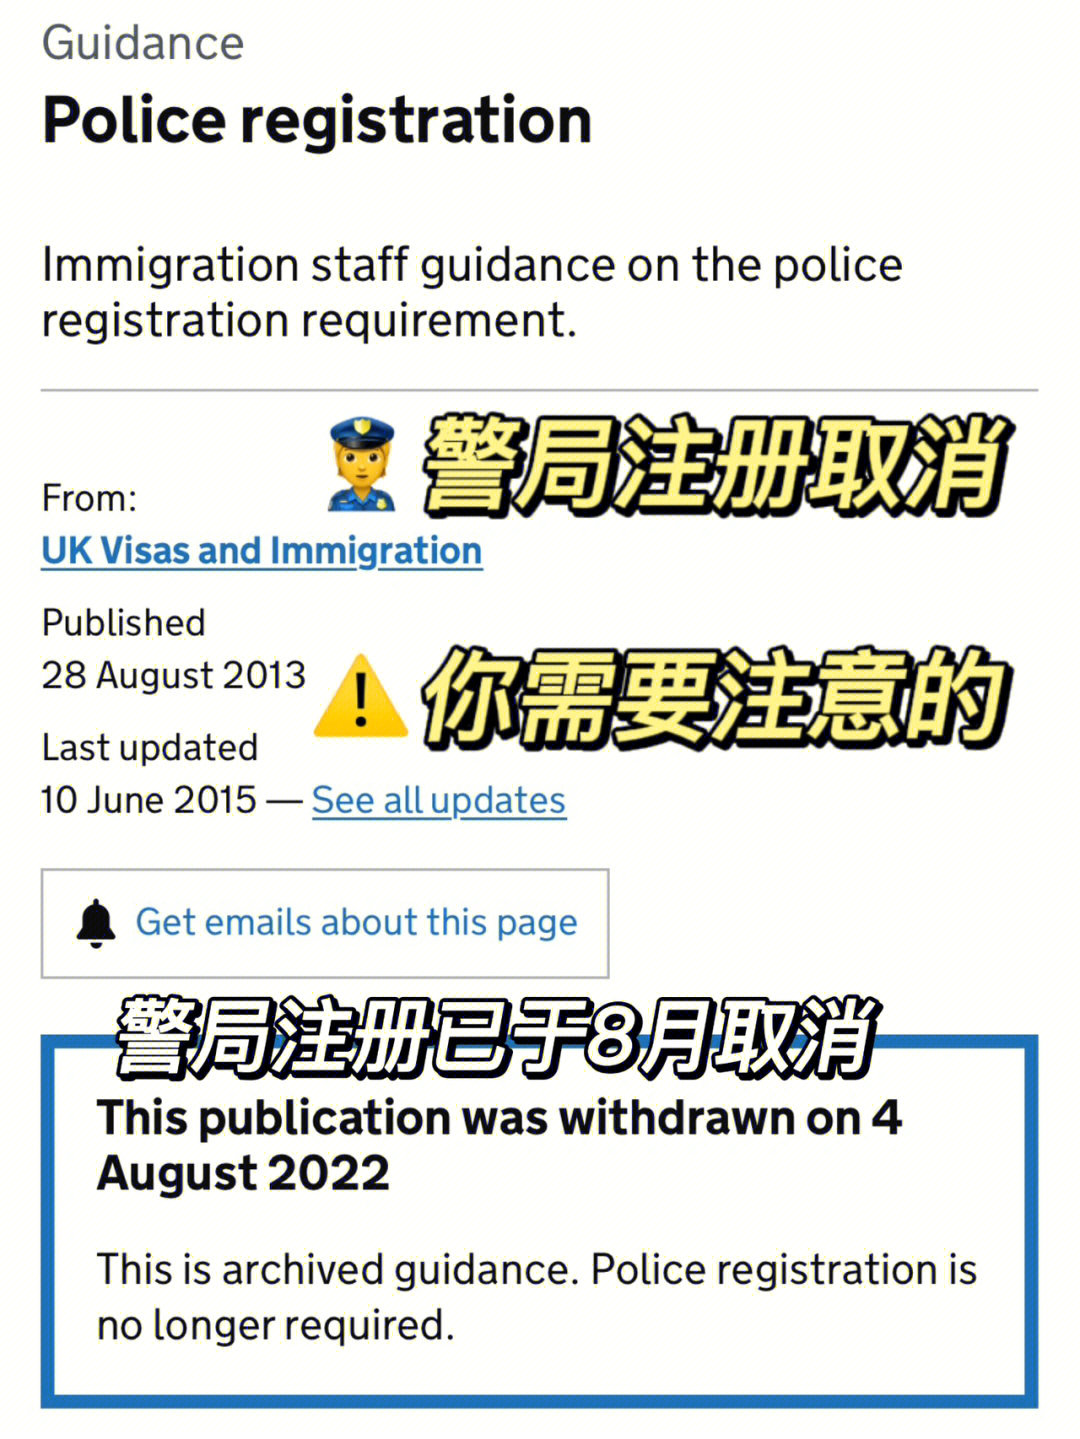 留学生,只要在英国居住超过6个月,都需要在到达英国后7天内去当地警察